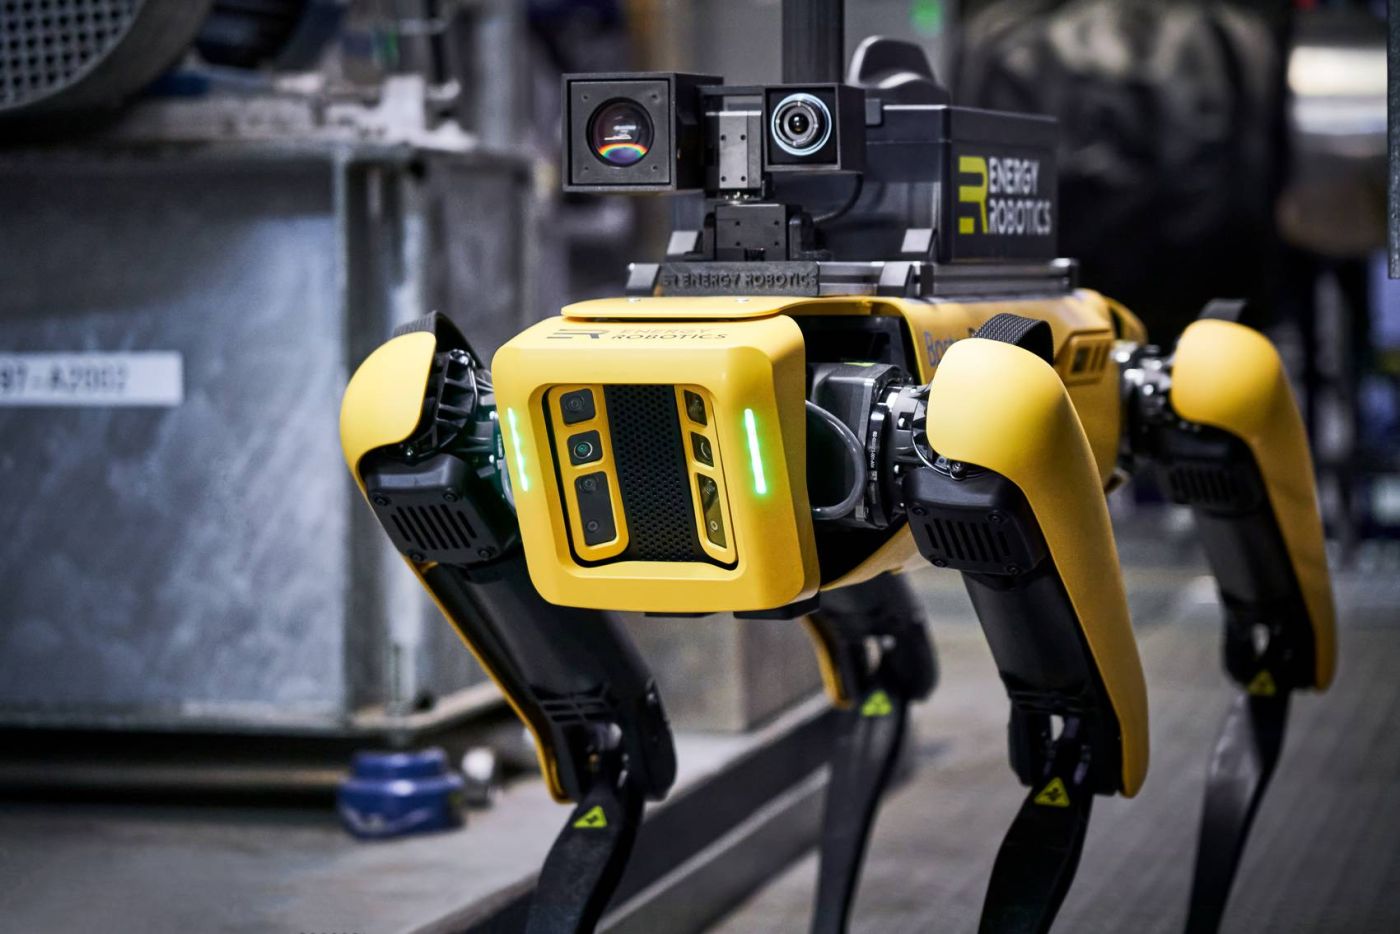 mobiler, autonomer Roboter Spot von Boston Dynamics mit Software von Energy Robotics